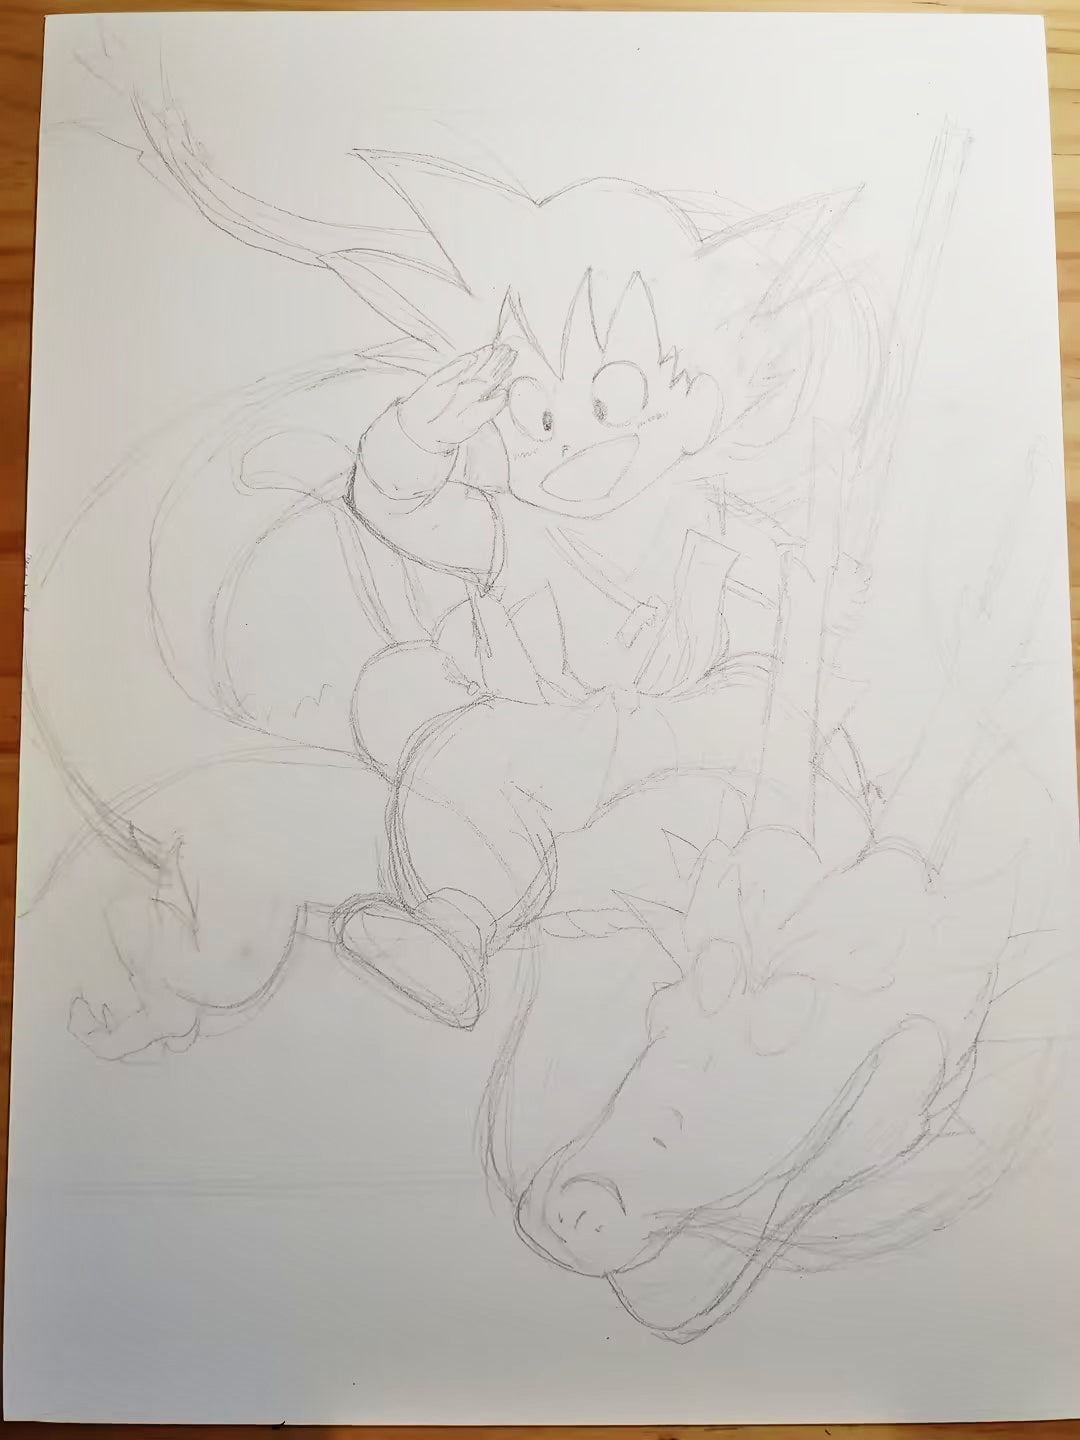 easy goku drawing and anime dragon